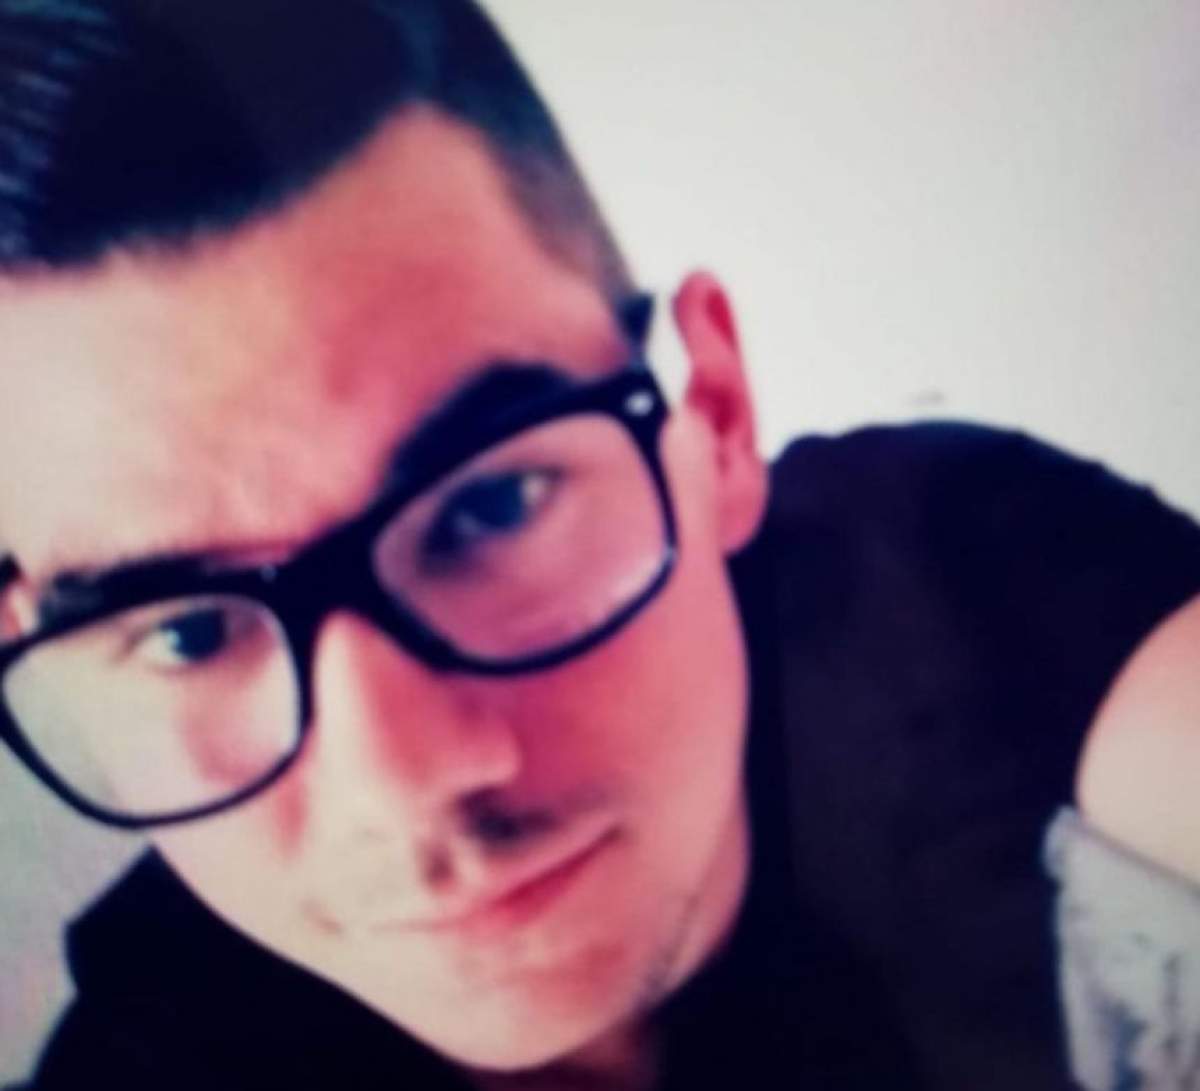 Tânărul de 23 de ani, dispărut în Cluj, a fost găsit. Gabriel, care era drogat şi avea hainele rupte, a fost salvat în ultima clipă